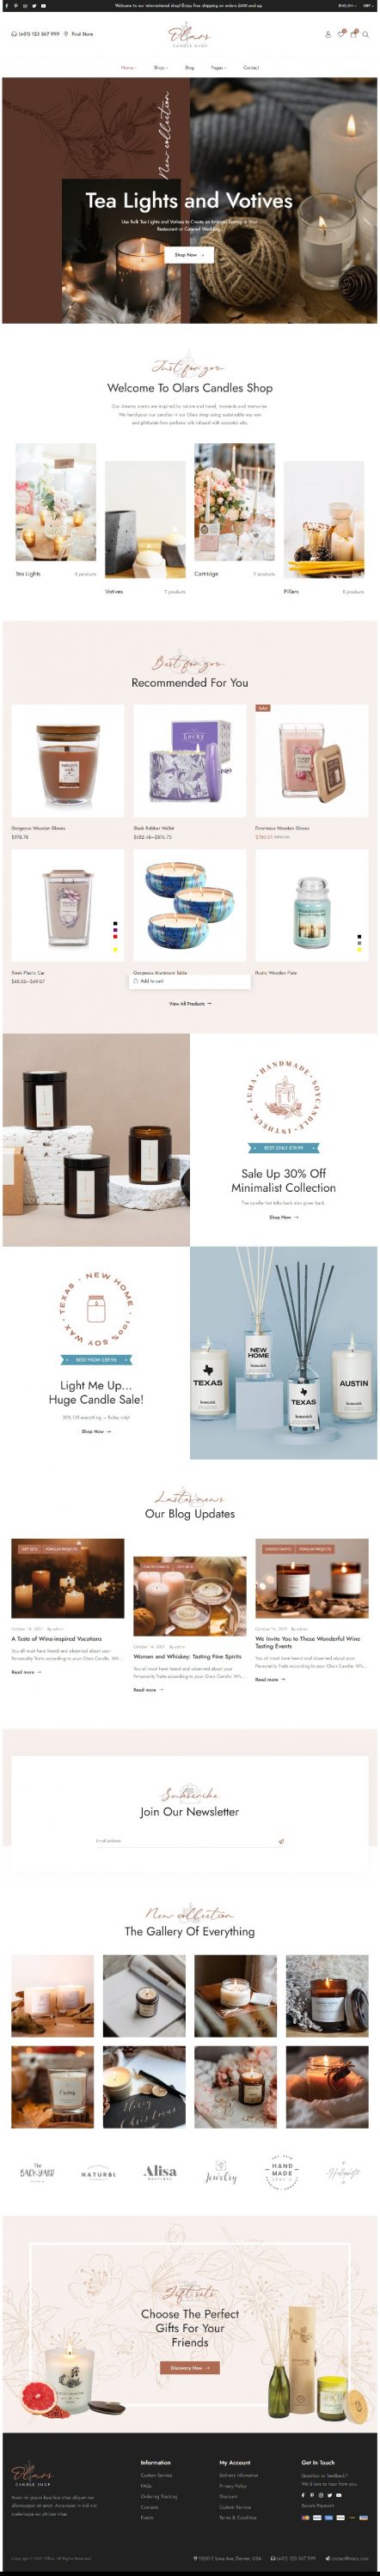 Mẫu website bán hàng thủ công mỹ nghệ_Candle Shop - Olars Home 2